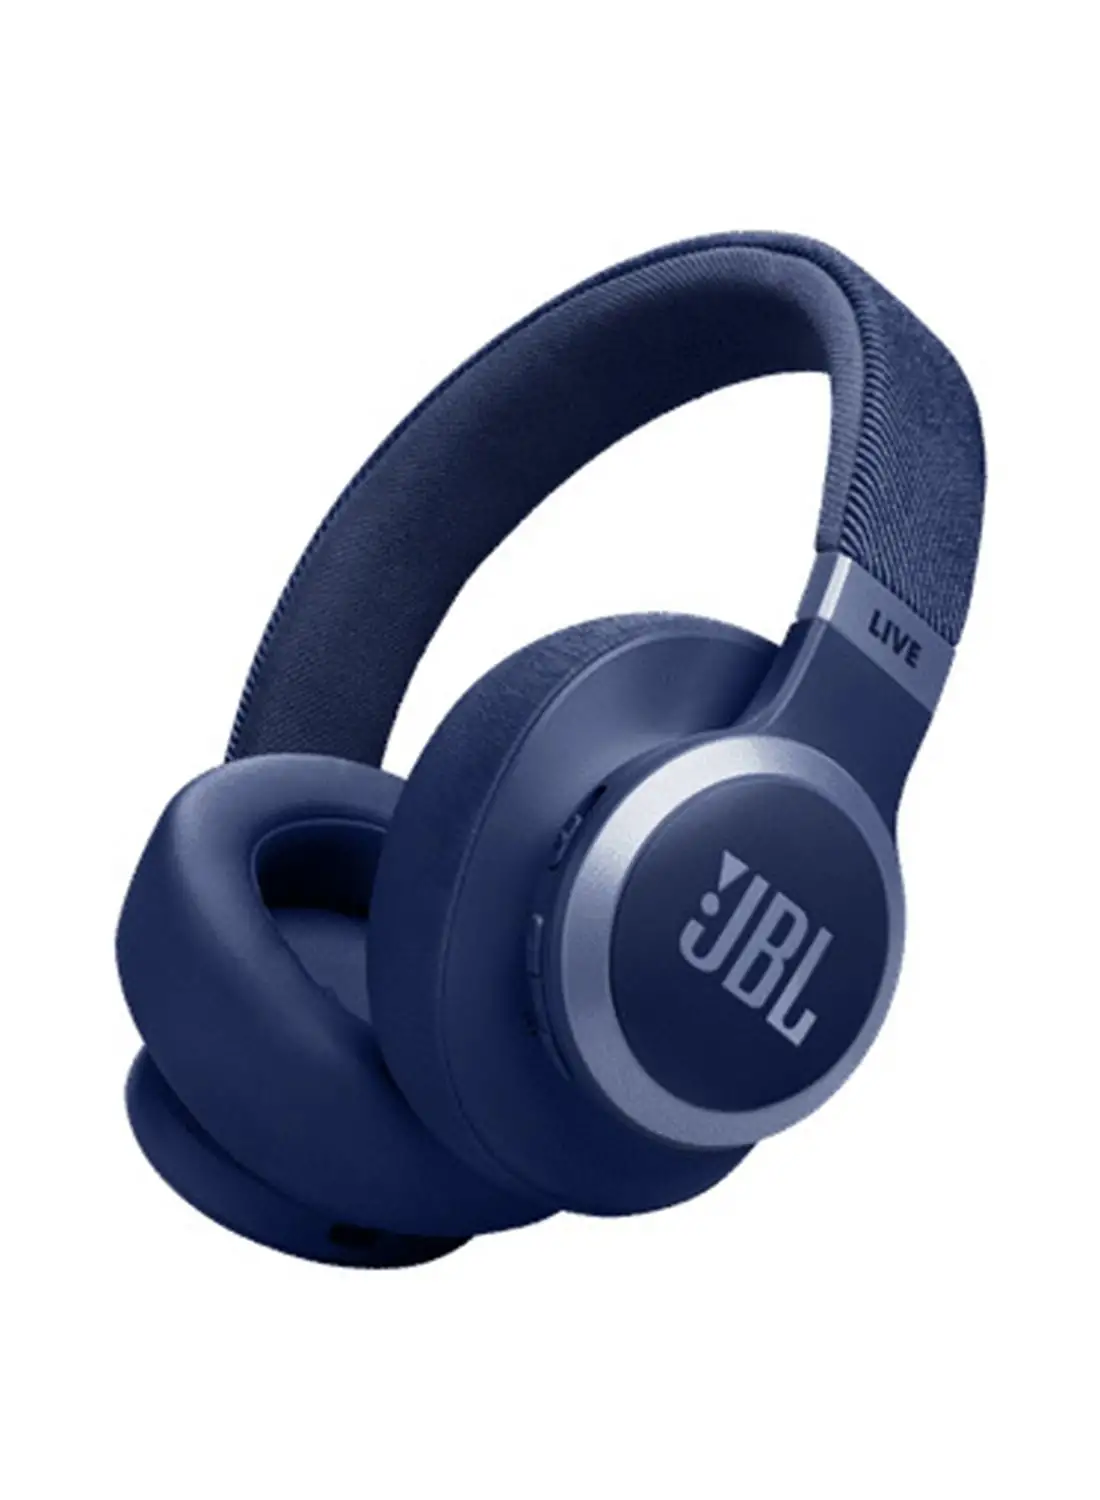 سماعات الرأس JBL Live 770 NC اللاسلكية فوق الأذن مع تقنية إلغاء الضوضاء التكيفية الحقيقية باللون الأزرق